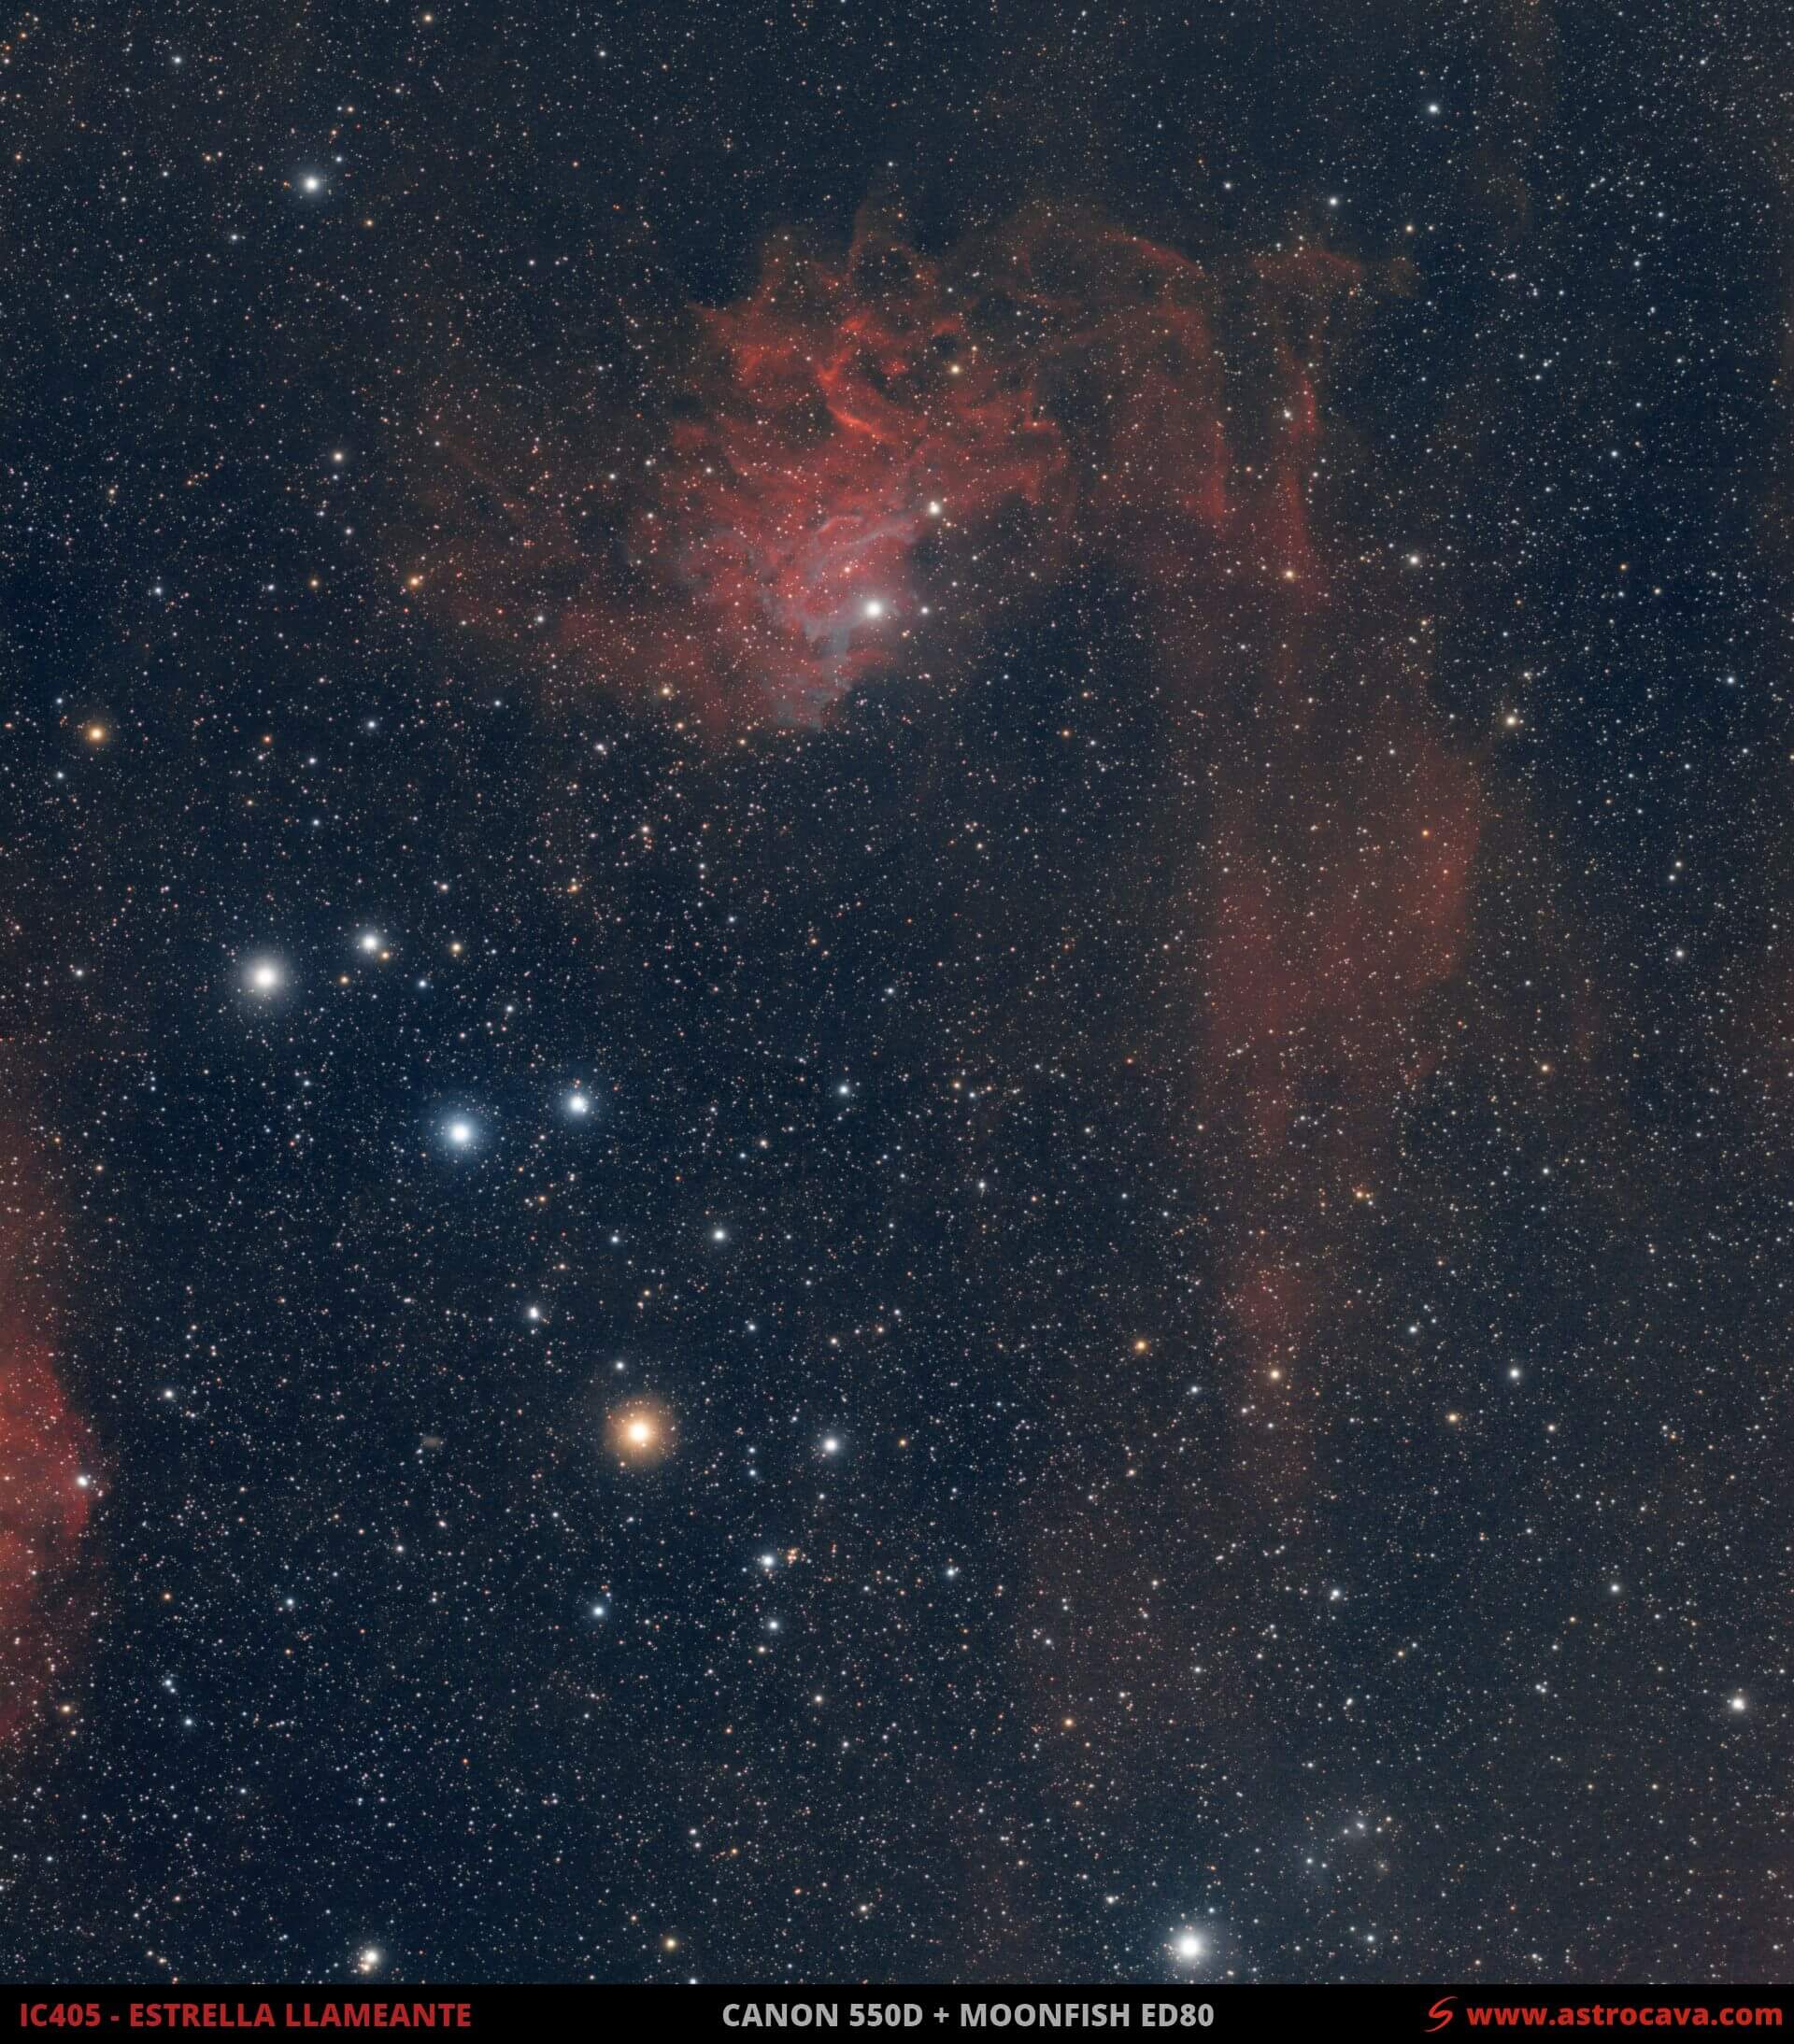 La nebulosa de la estrella llameante - IC405